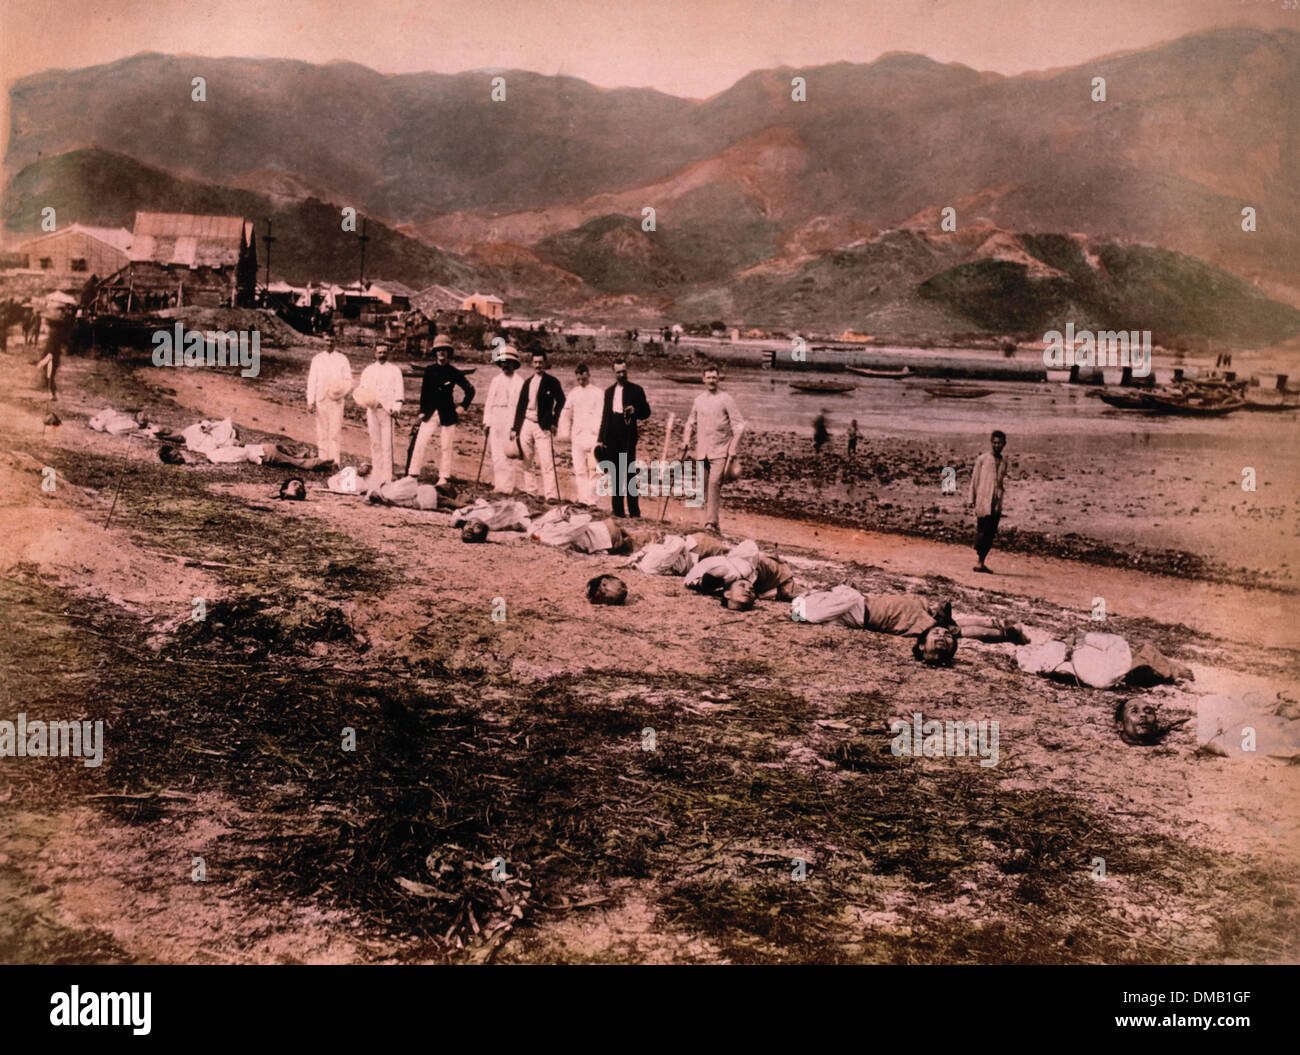 Ausführung von Namoa Piraten, Kowloon City, China, 11. Mai 1891 Stockfoto